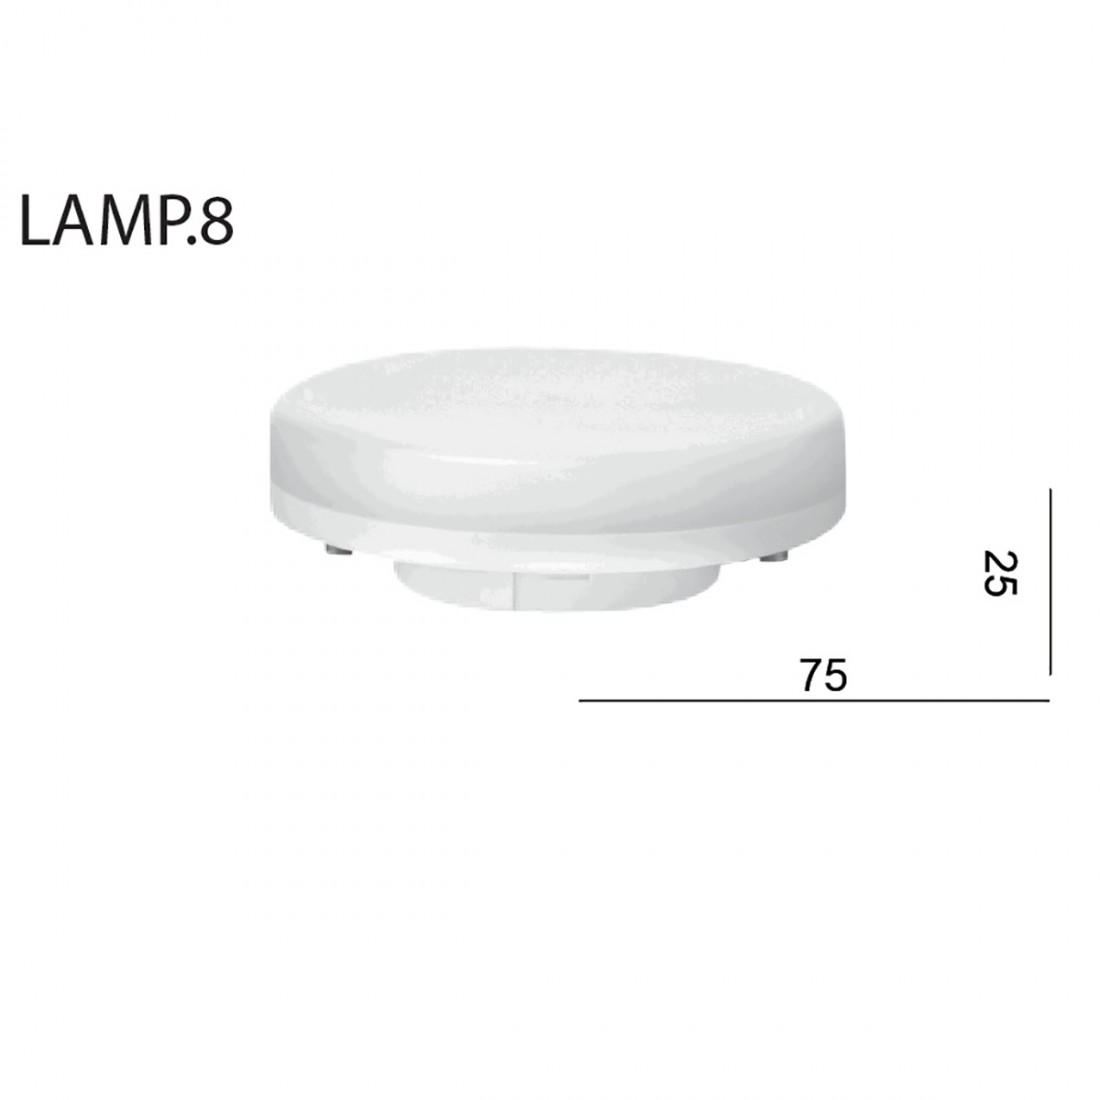 Ampoule Led 6.5W Lampe 8 Toscot avec connexion baïonnette Gx53, 220V